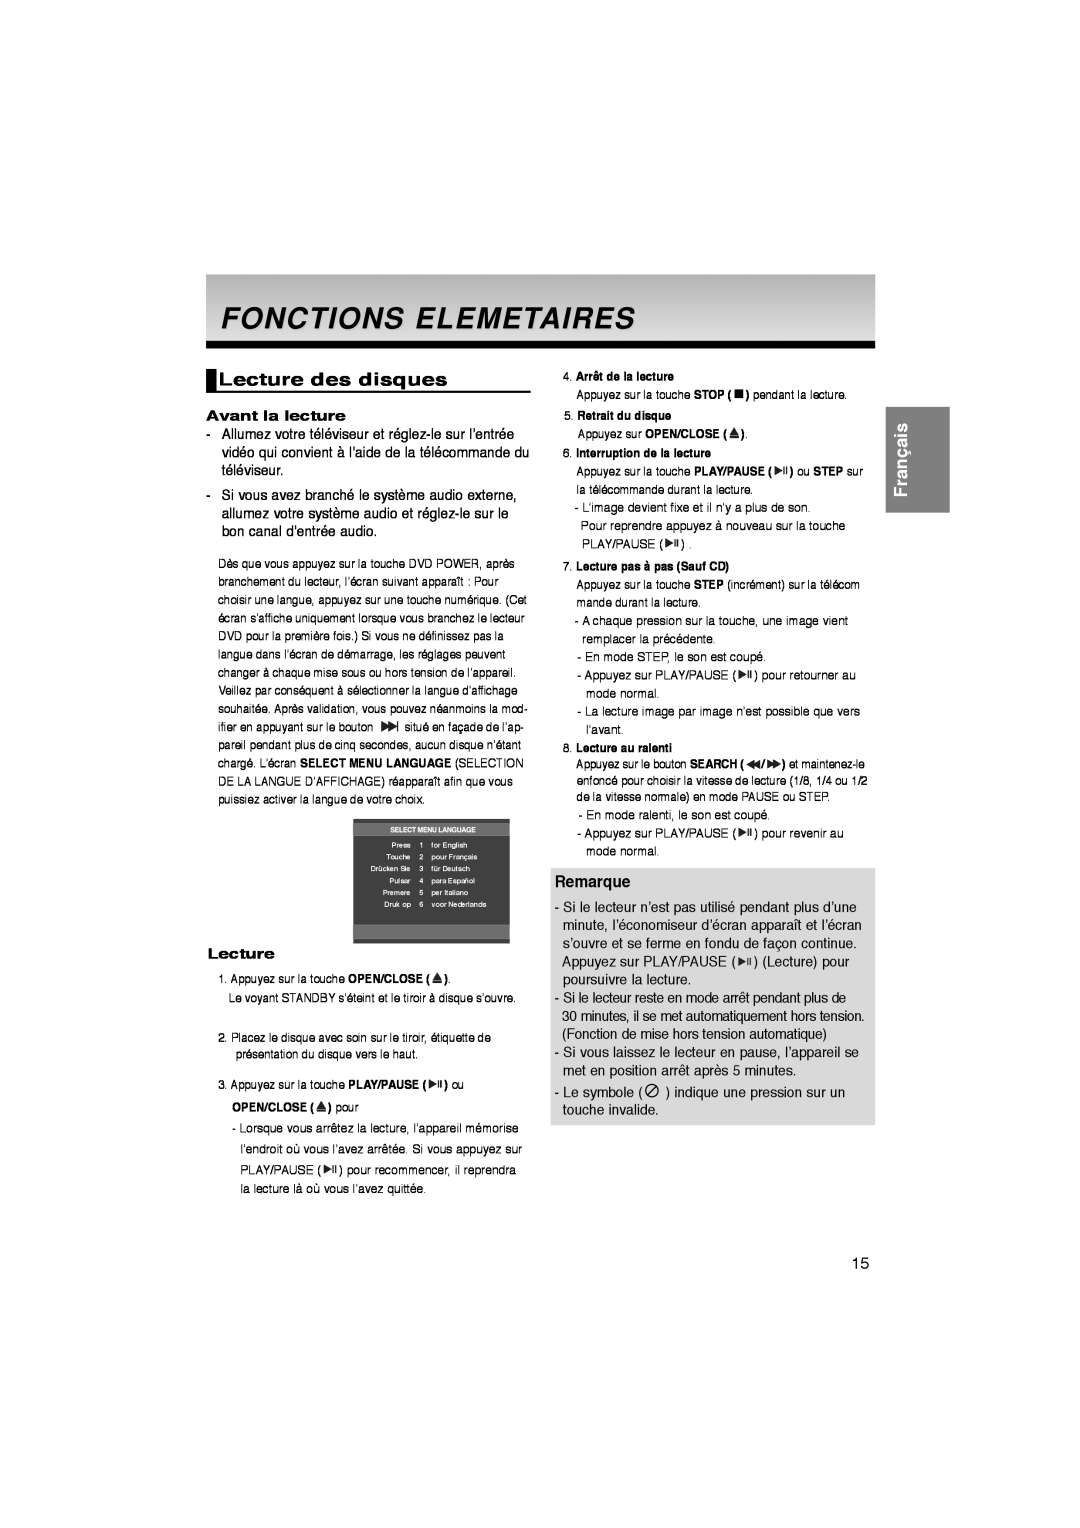 Samsung DVD-P260K/AFR manual Fonctions Elemetaires, Lecture des disques, Remarque, Avant la lecture, Français 